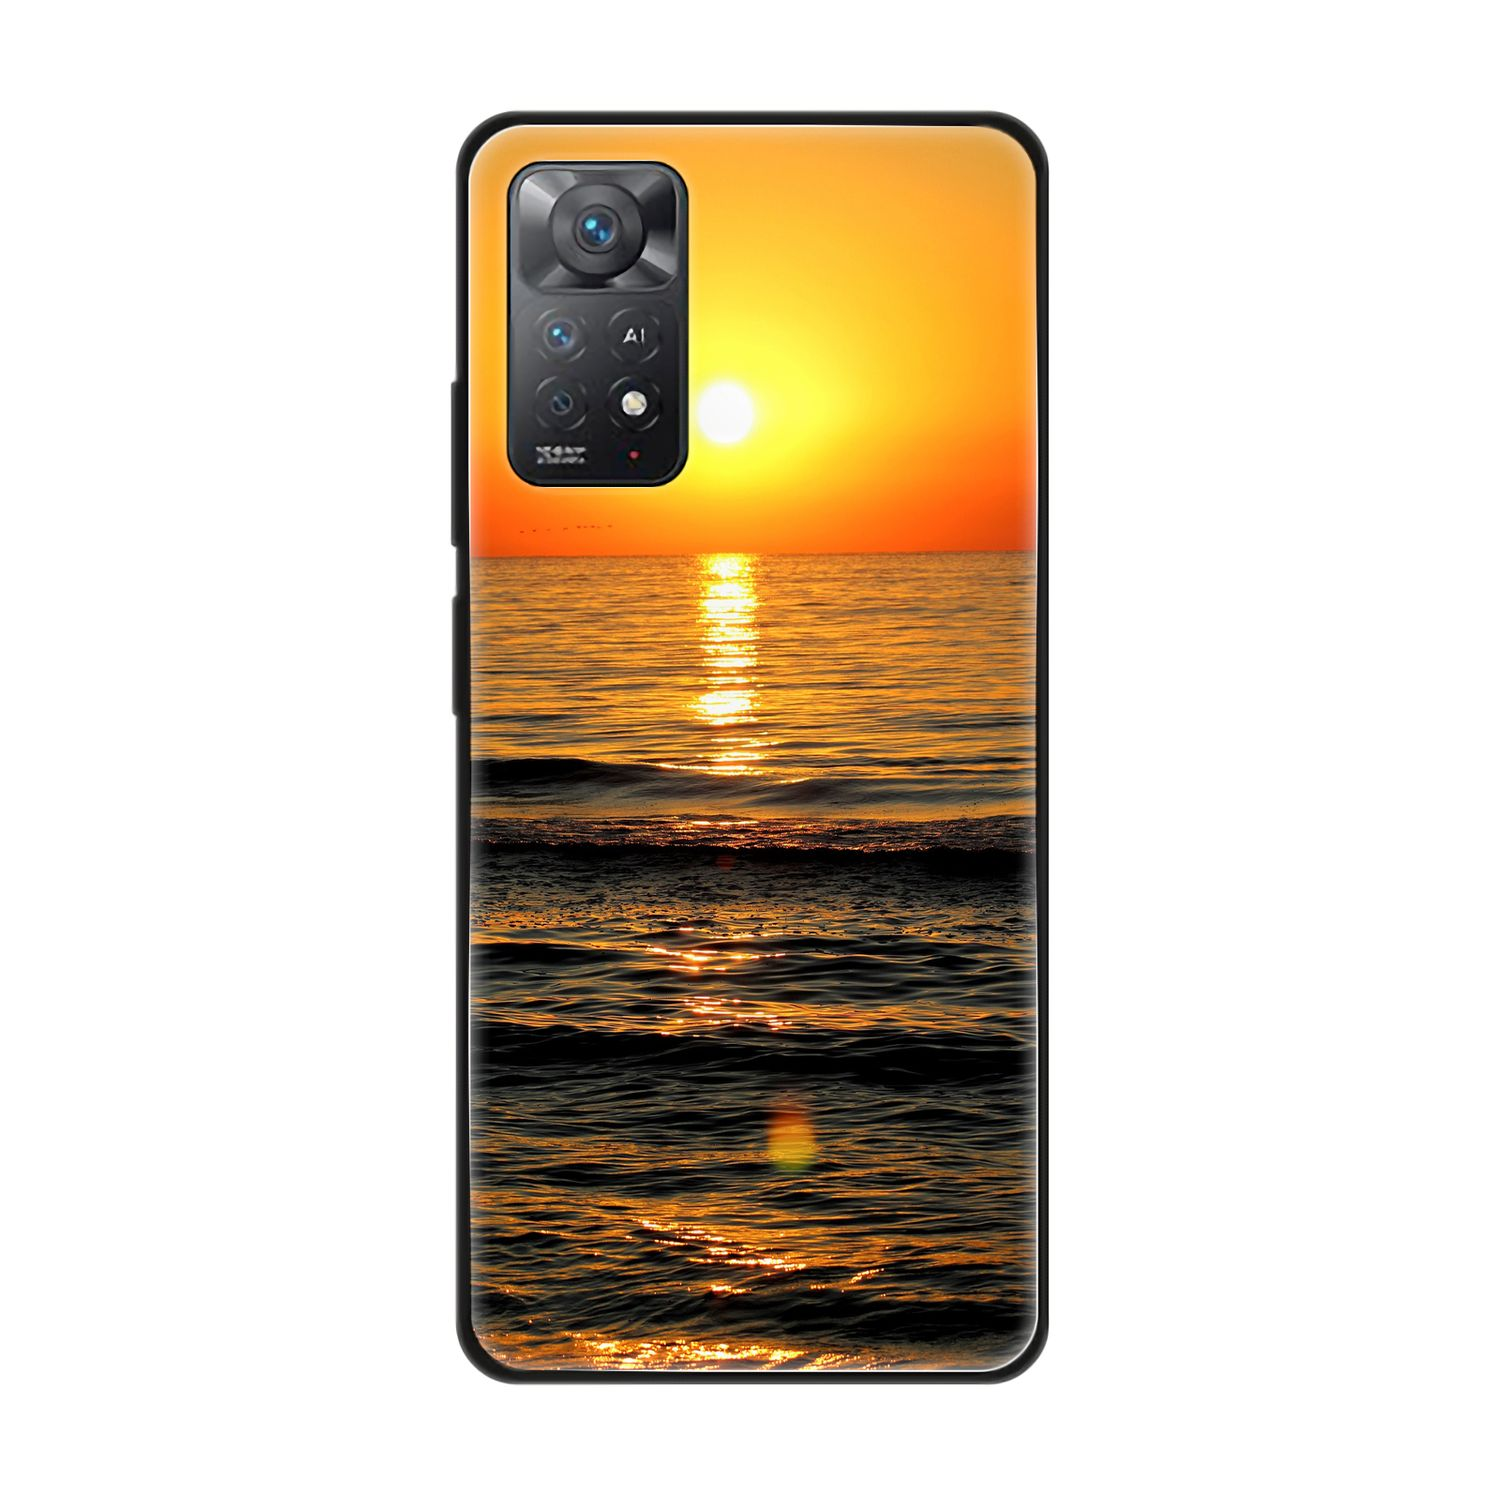 Note Sonnenuntergang Backcover, Redmi KÖNIG 11E Xiaomi, DESIGN Case, Pro,